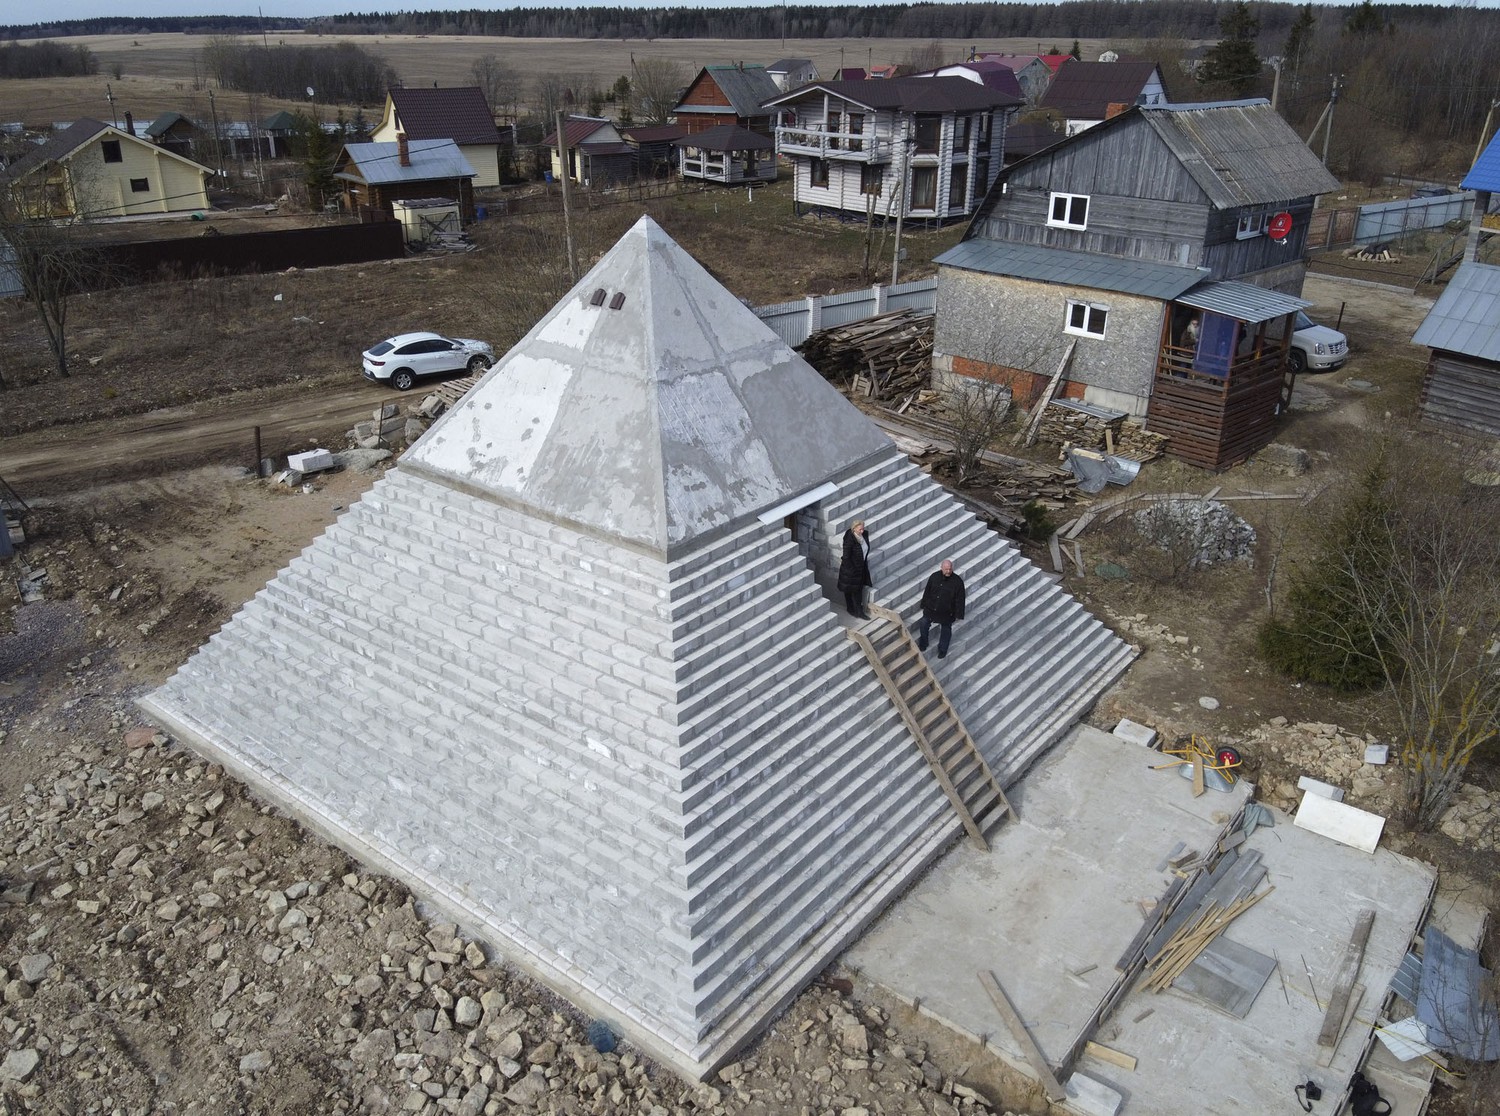 Sankt-Peterburg yaqinidagi qishloqda Andrey Vaxrushev o‘z uyida Xeops piramidasining kichik nusxasini yaratdi. Piramidaning balandligi 9 metrga teng.